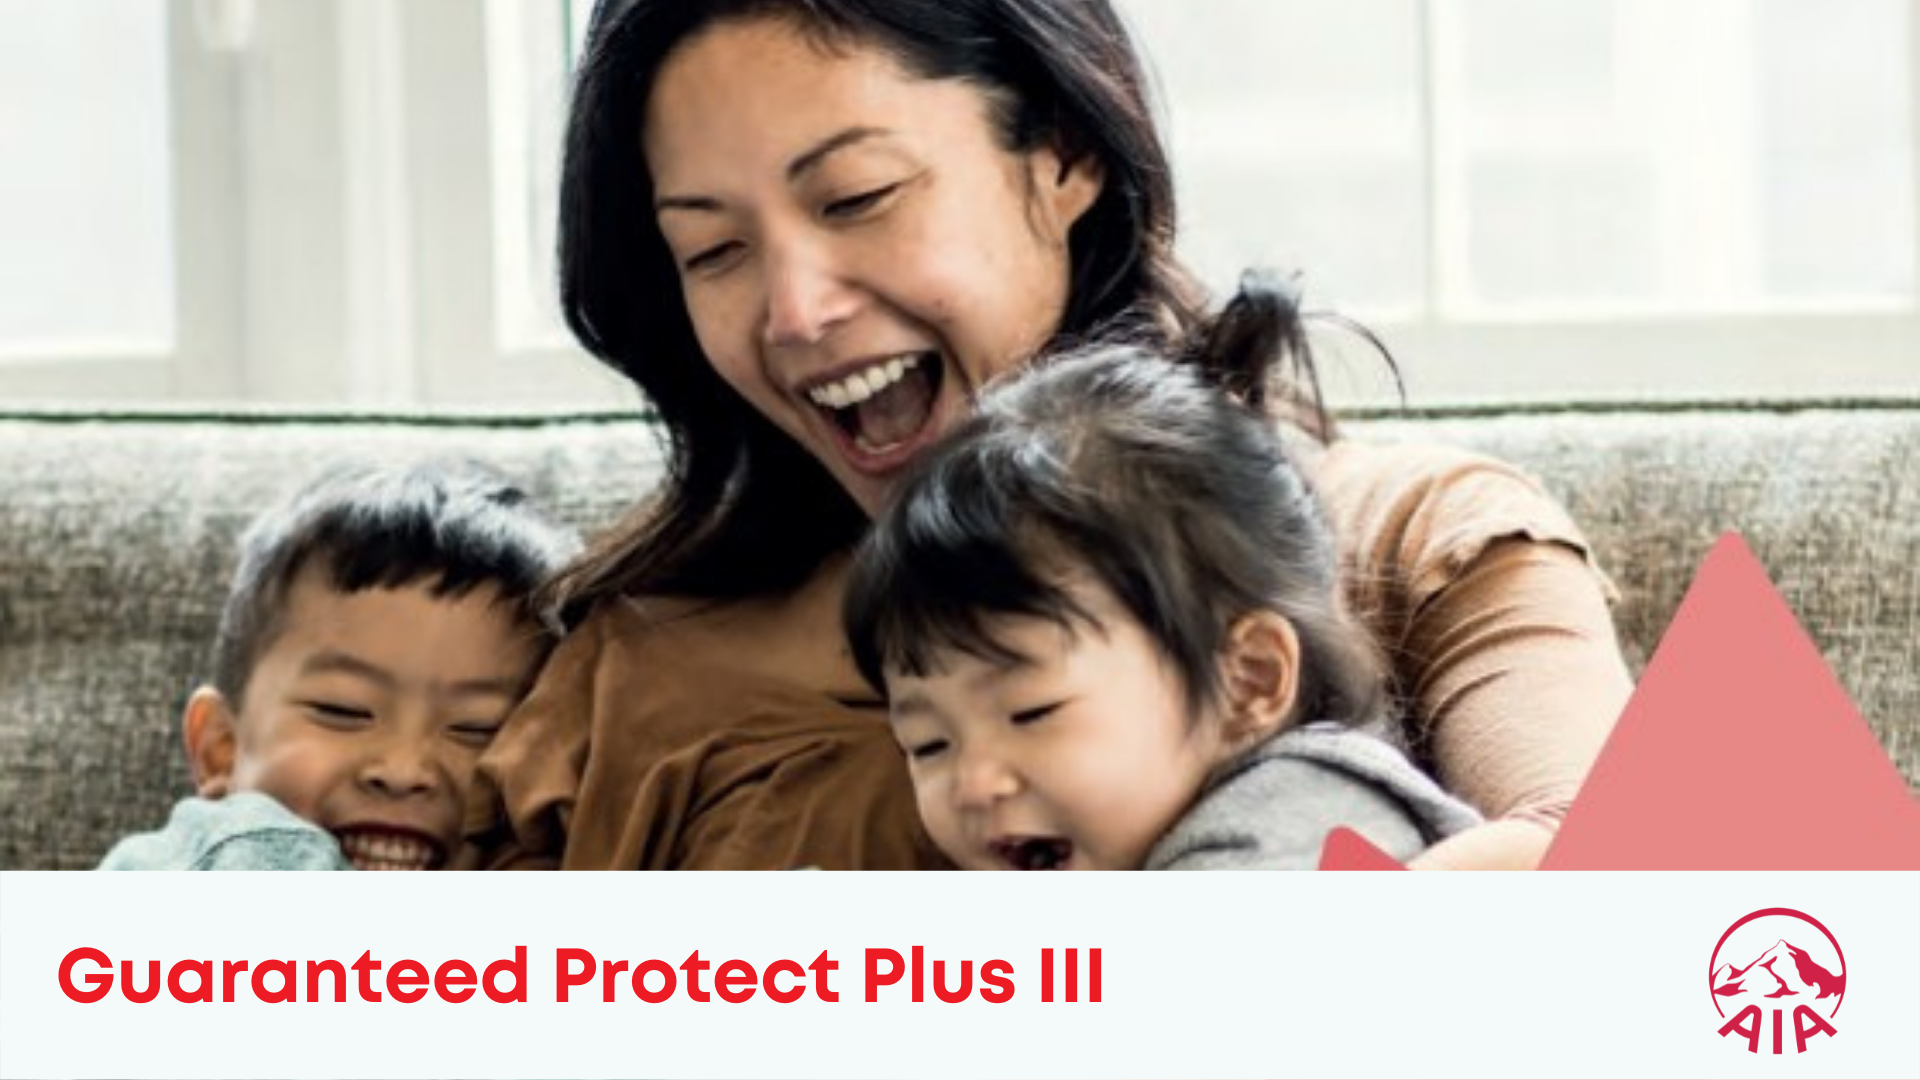 AIA Guaranteed Protect Plus III